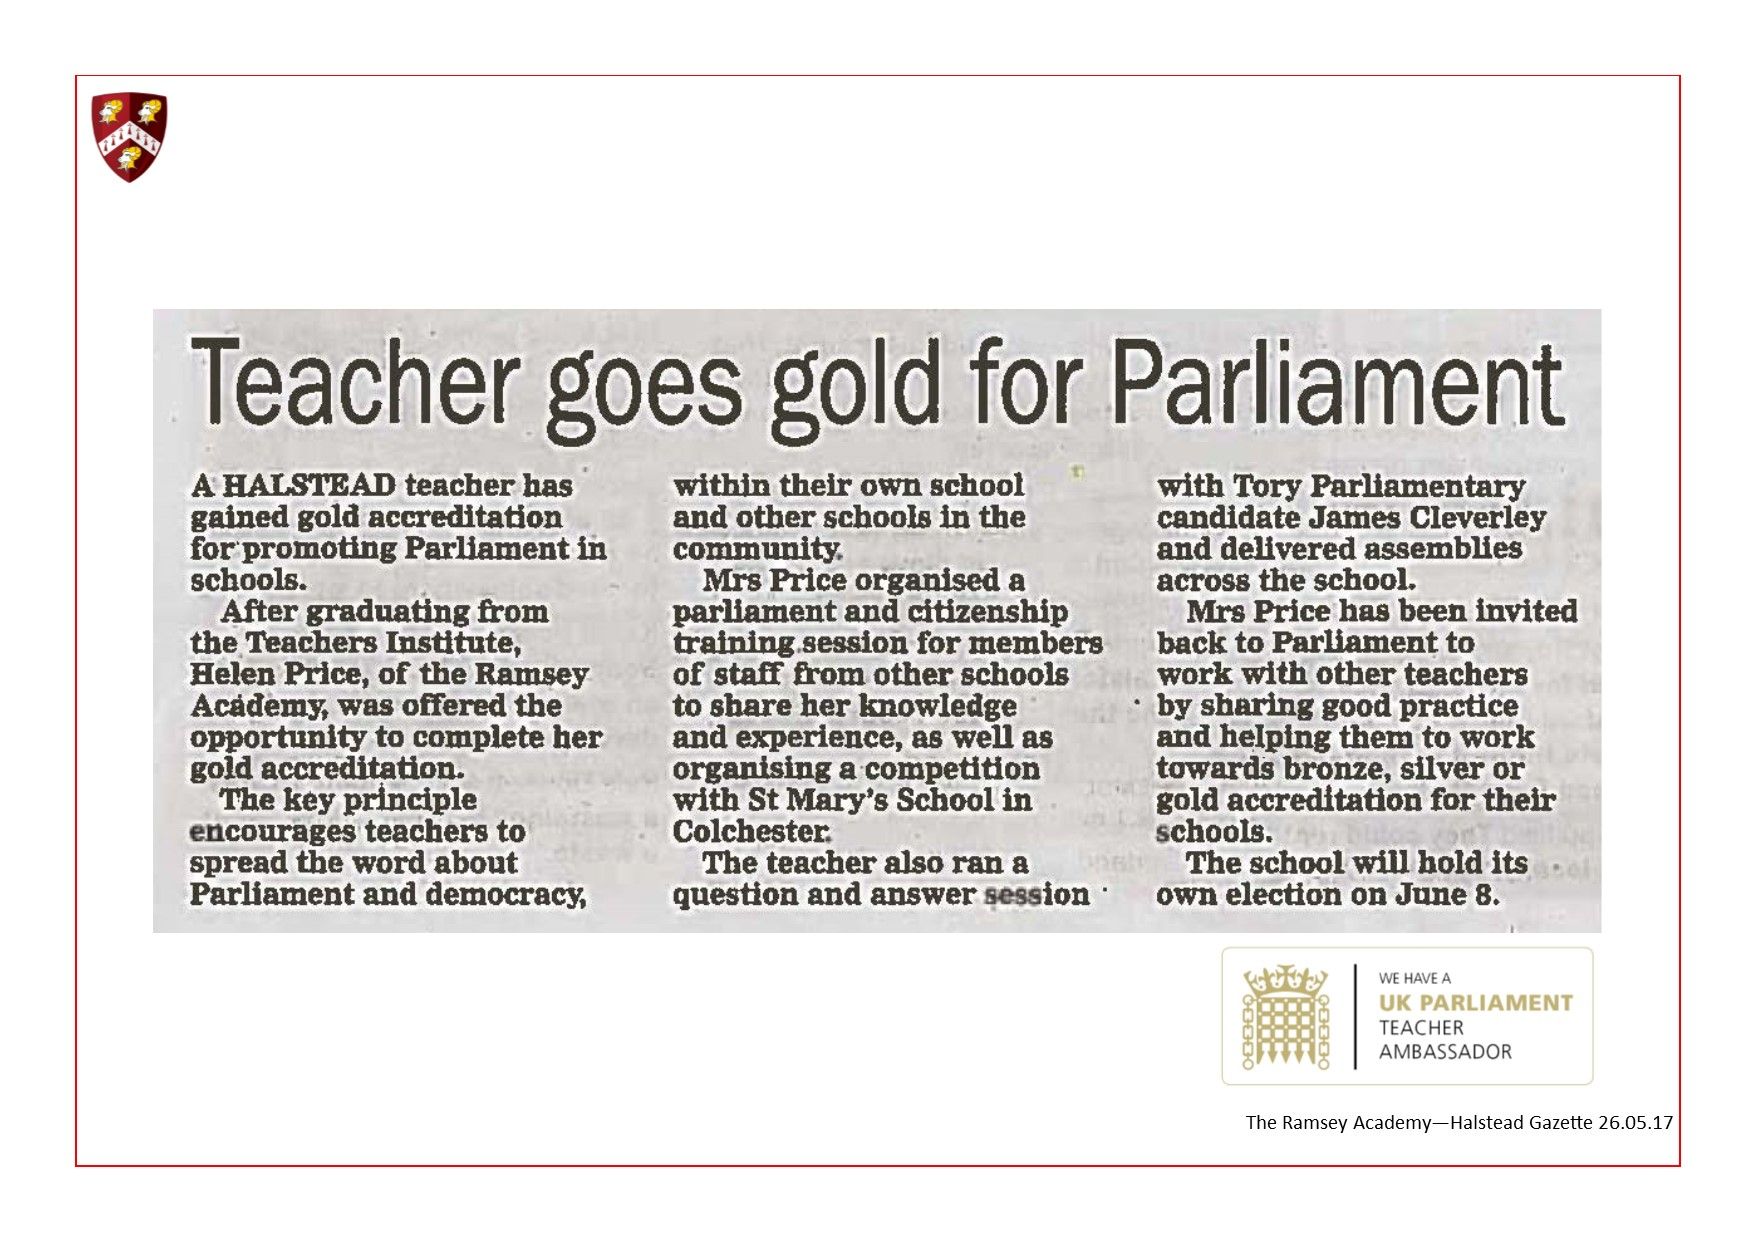 UK Parliament Teacher Ambassador 28.05.17